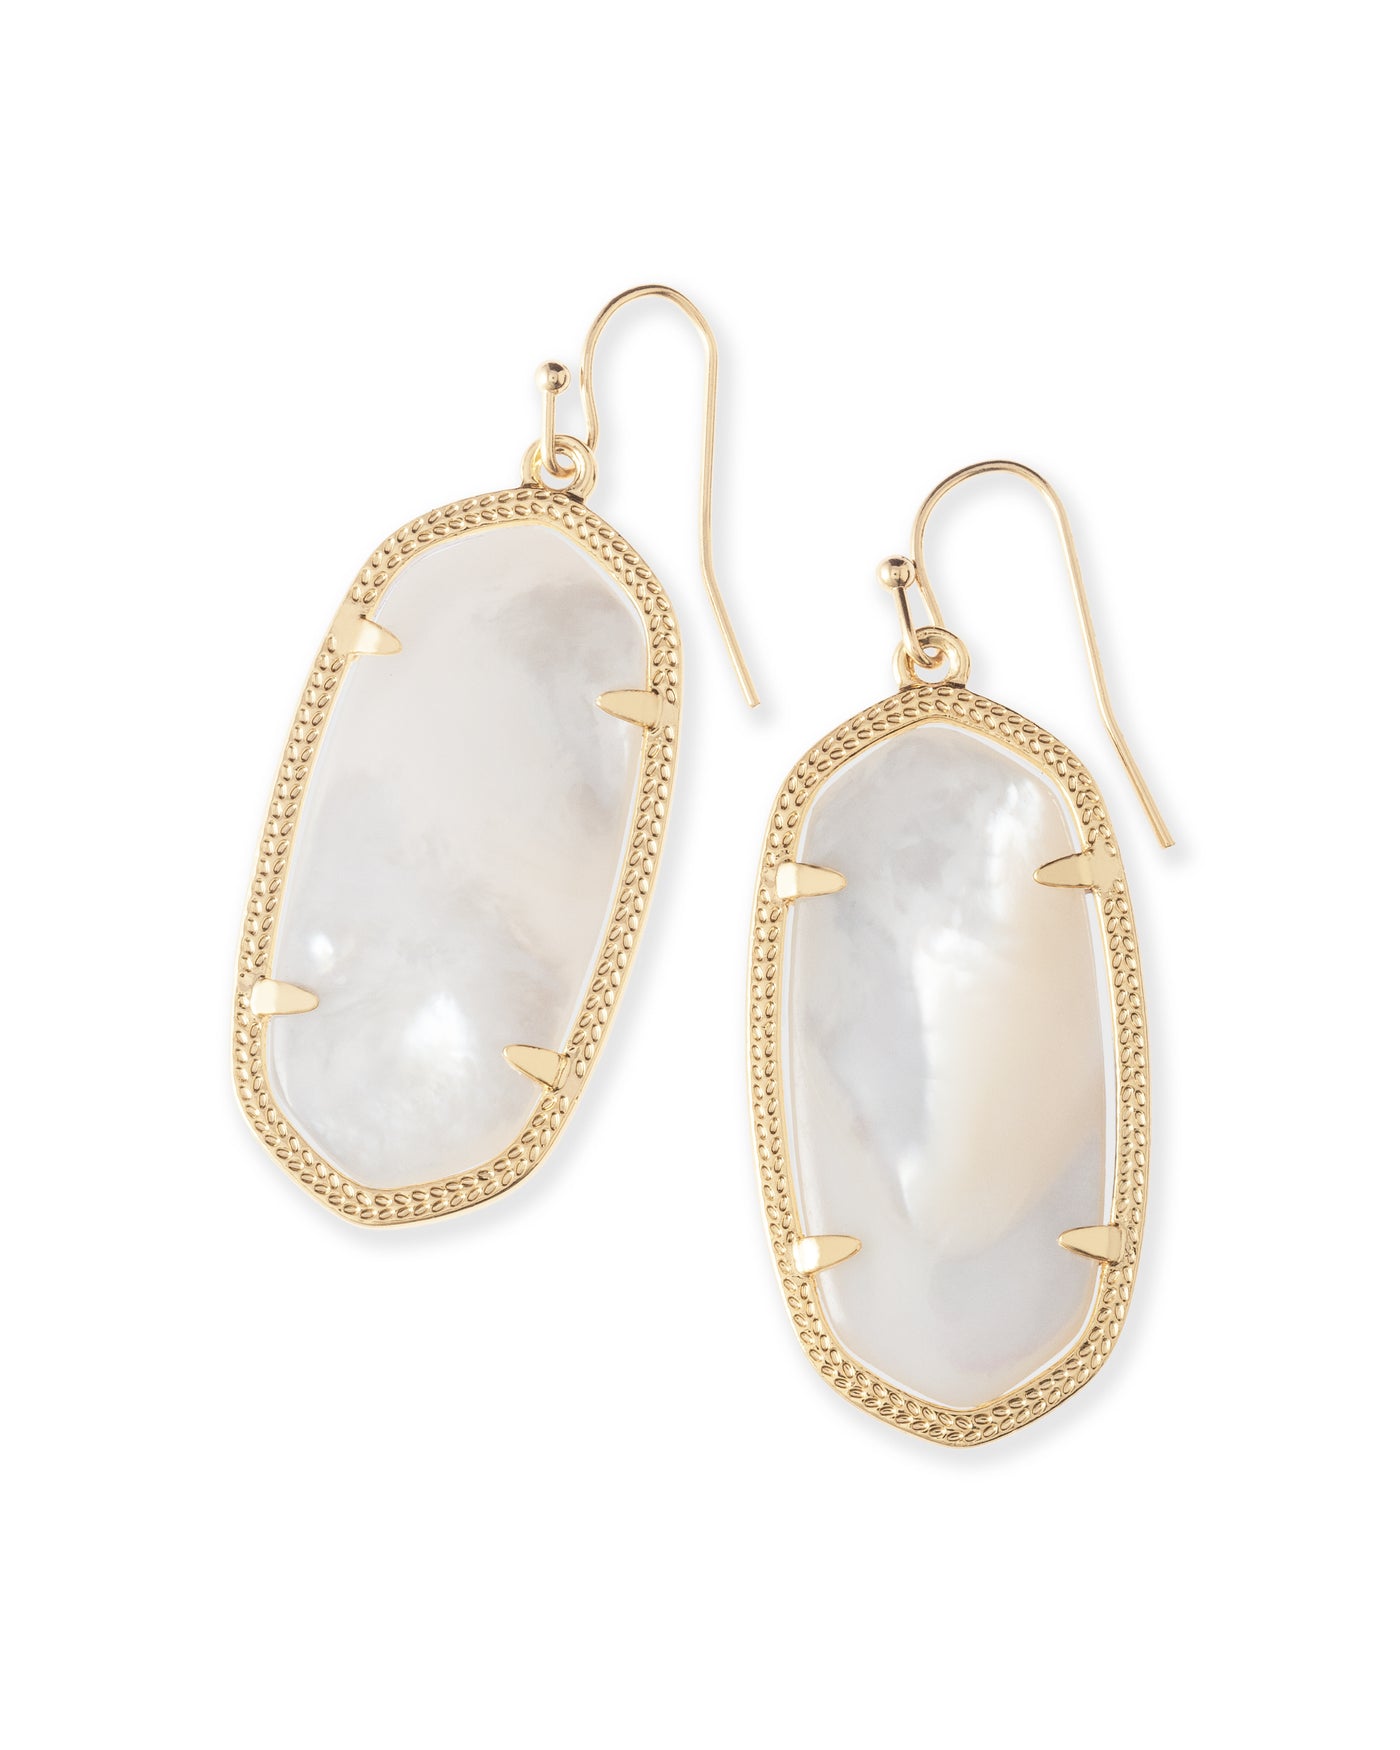 Elle Gold Drop Earrings in Ivory Mother-of-Pearl | Kendra Scott Media 1 of 1